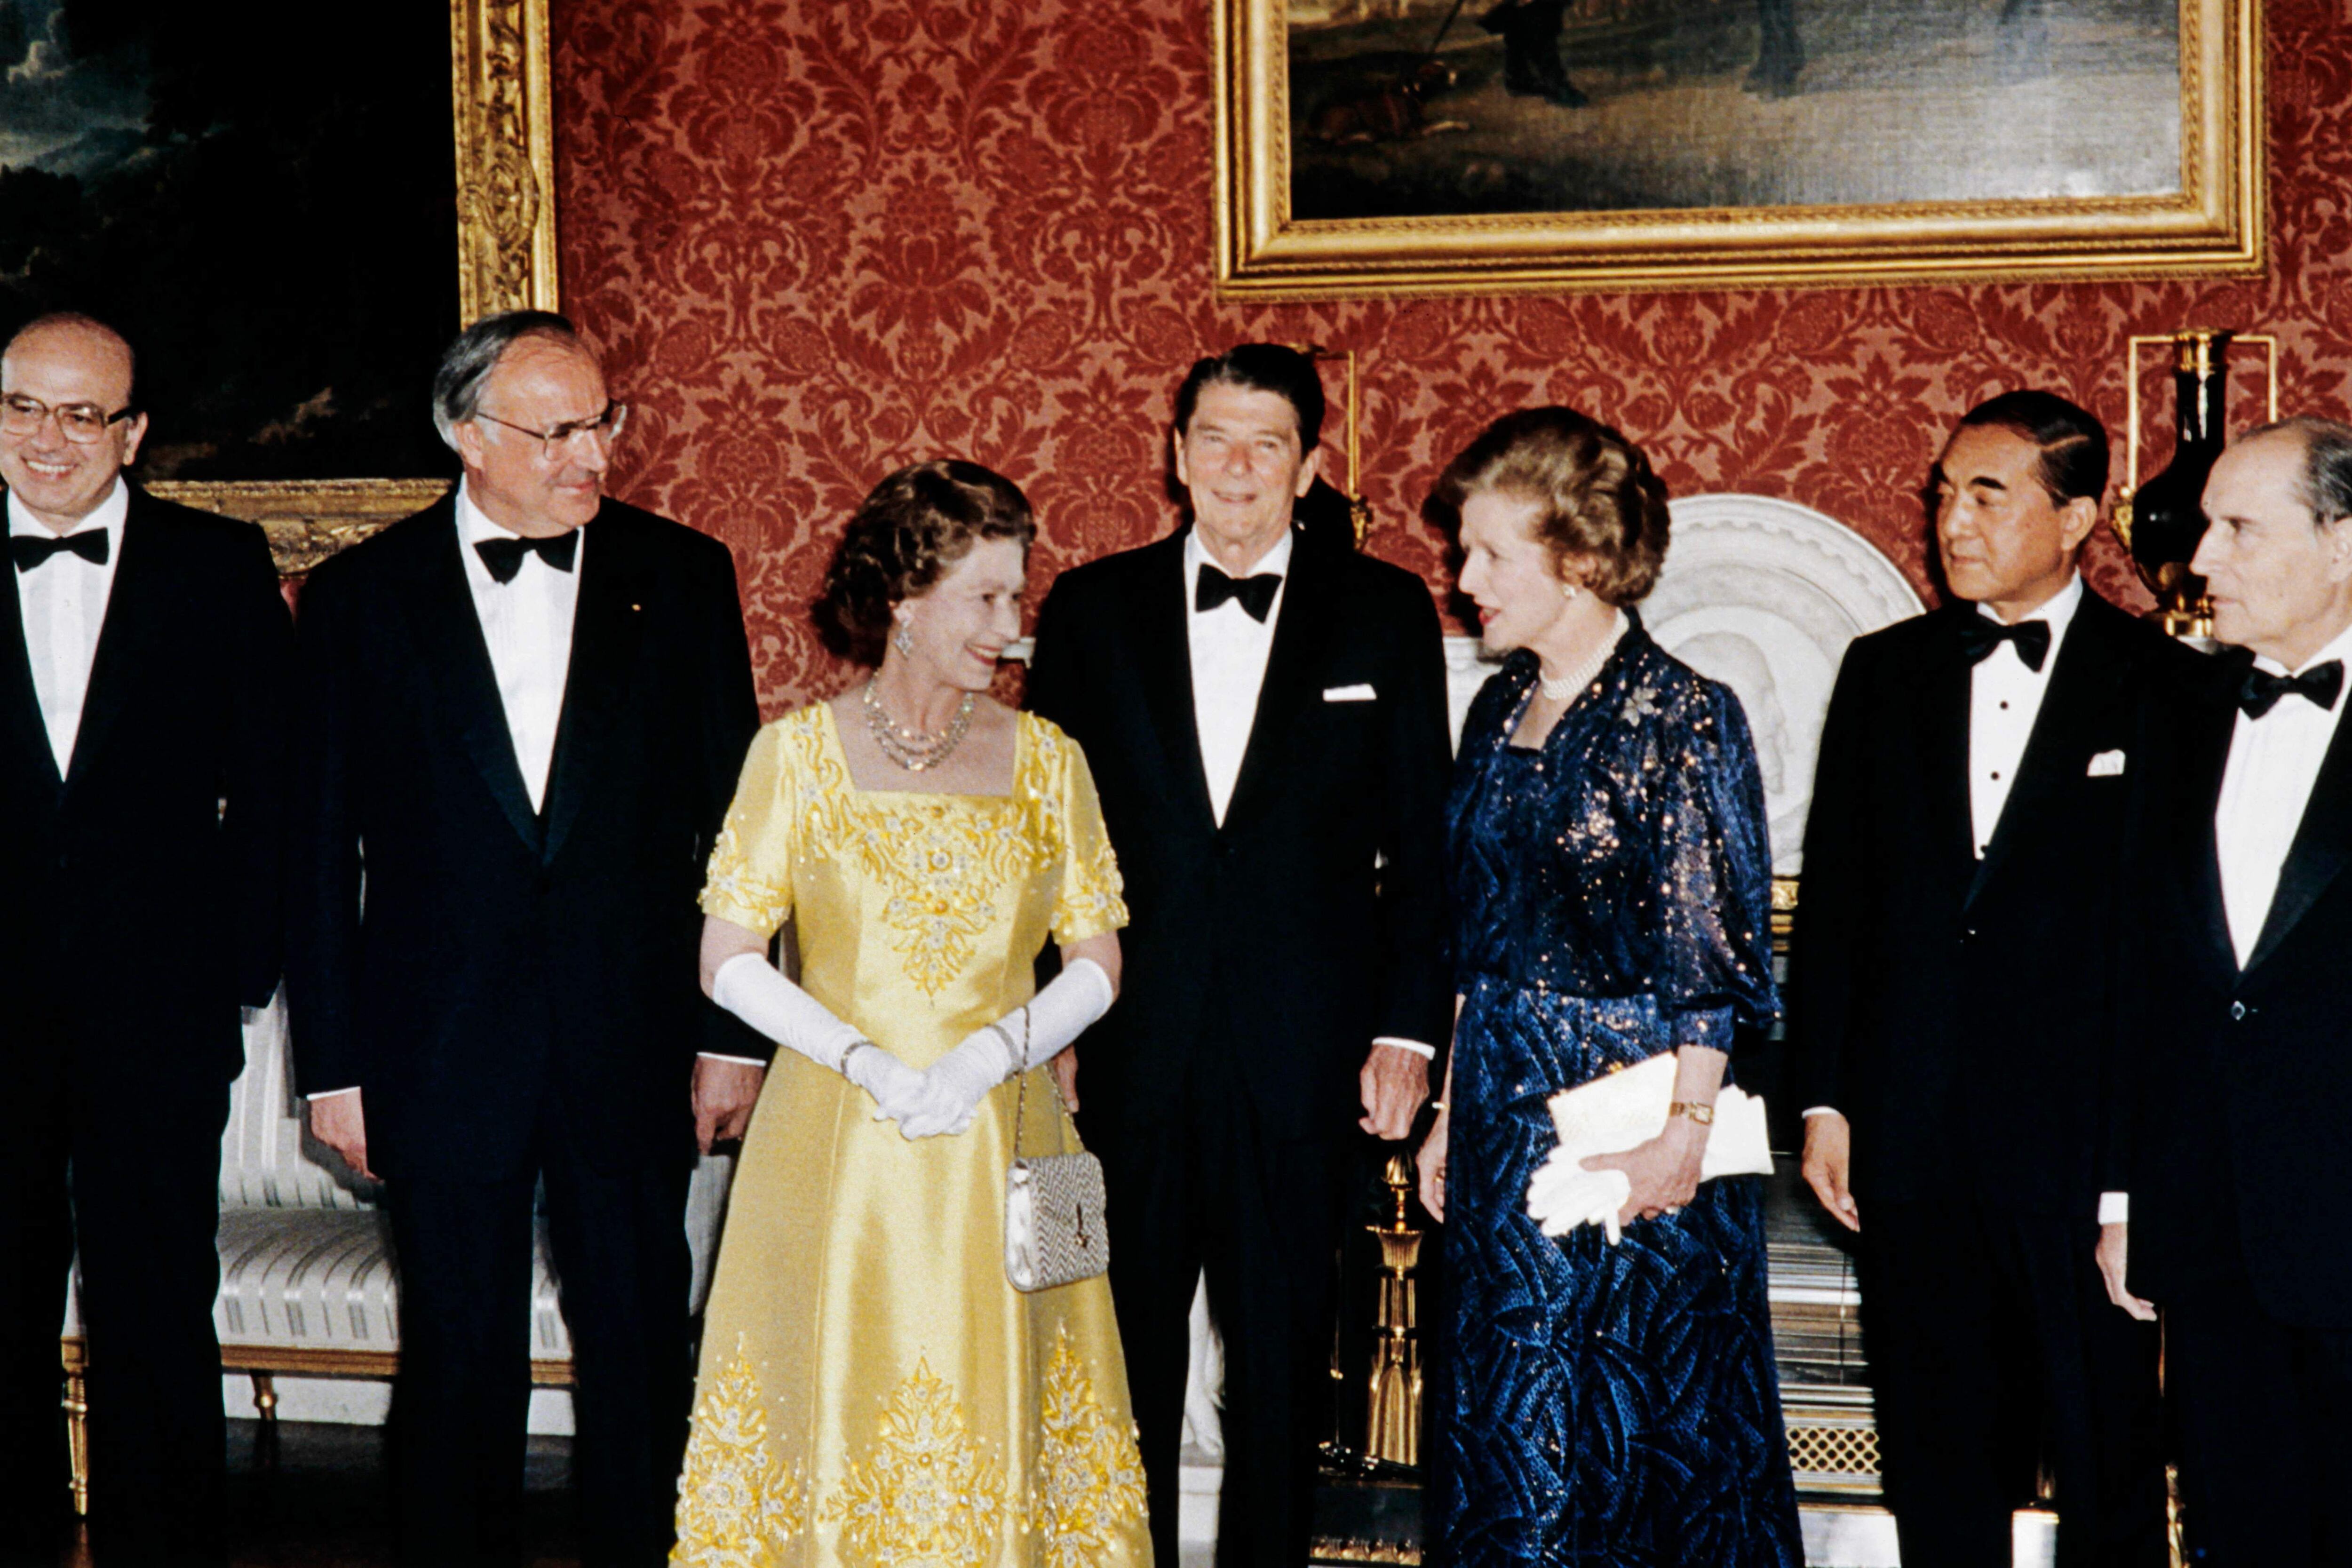 Fotografía tomada en 1984 en la que se observa a la reina Isabel II (c) junto a Margaret Thatcher, la primera mujer en ocupar el cargo de Primer Ministro del Reino Unido. (AFP, archivo)